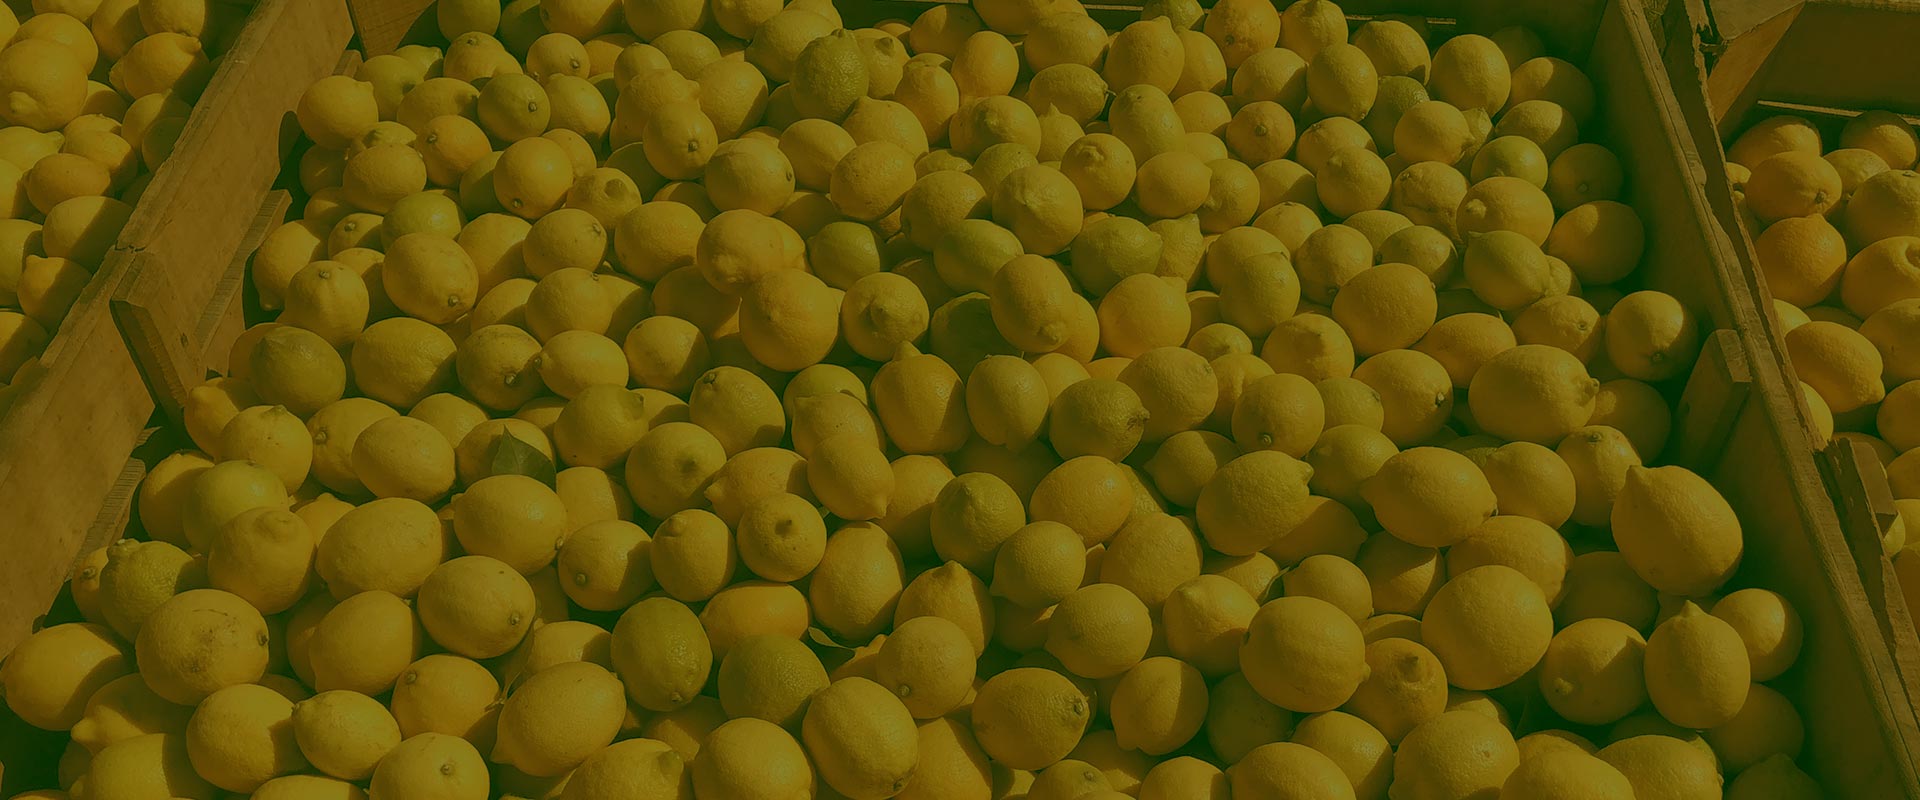 Cosecha de Limones